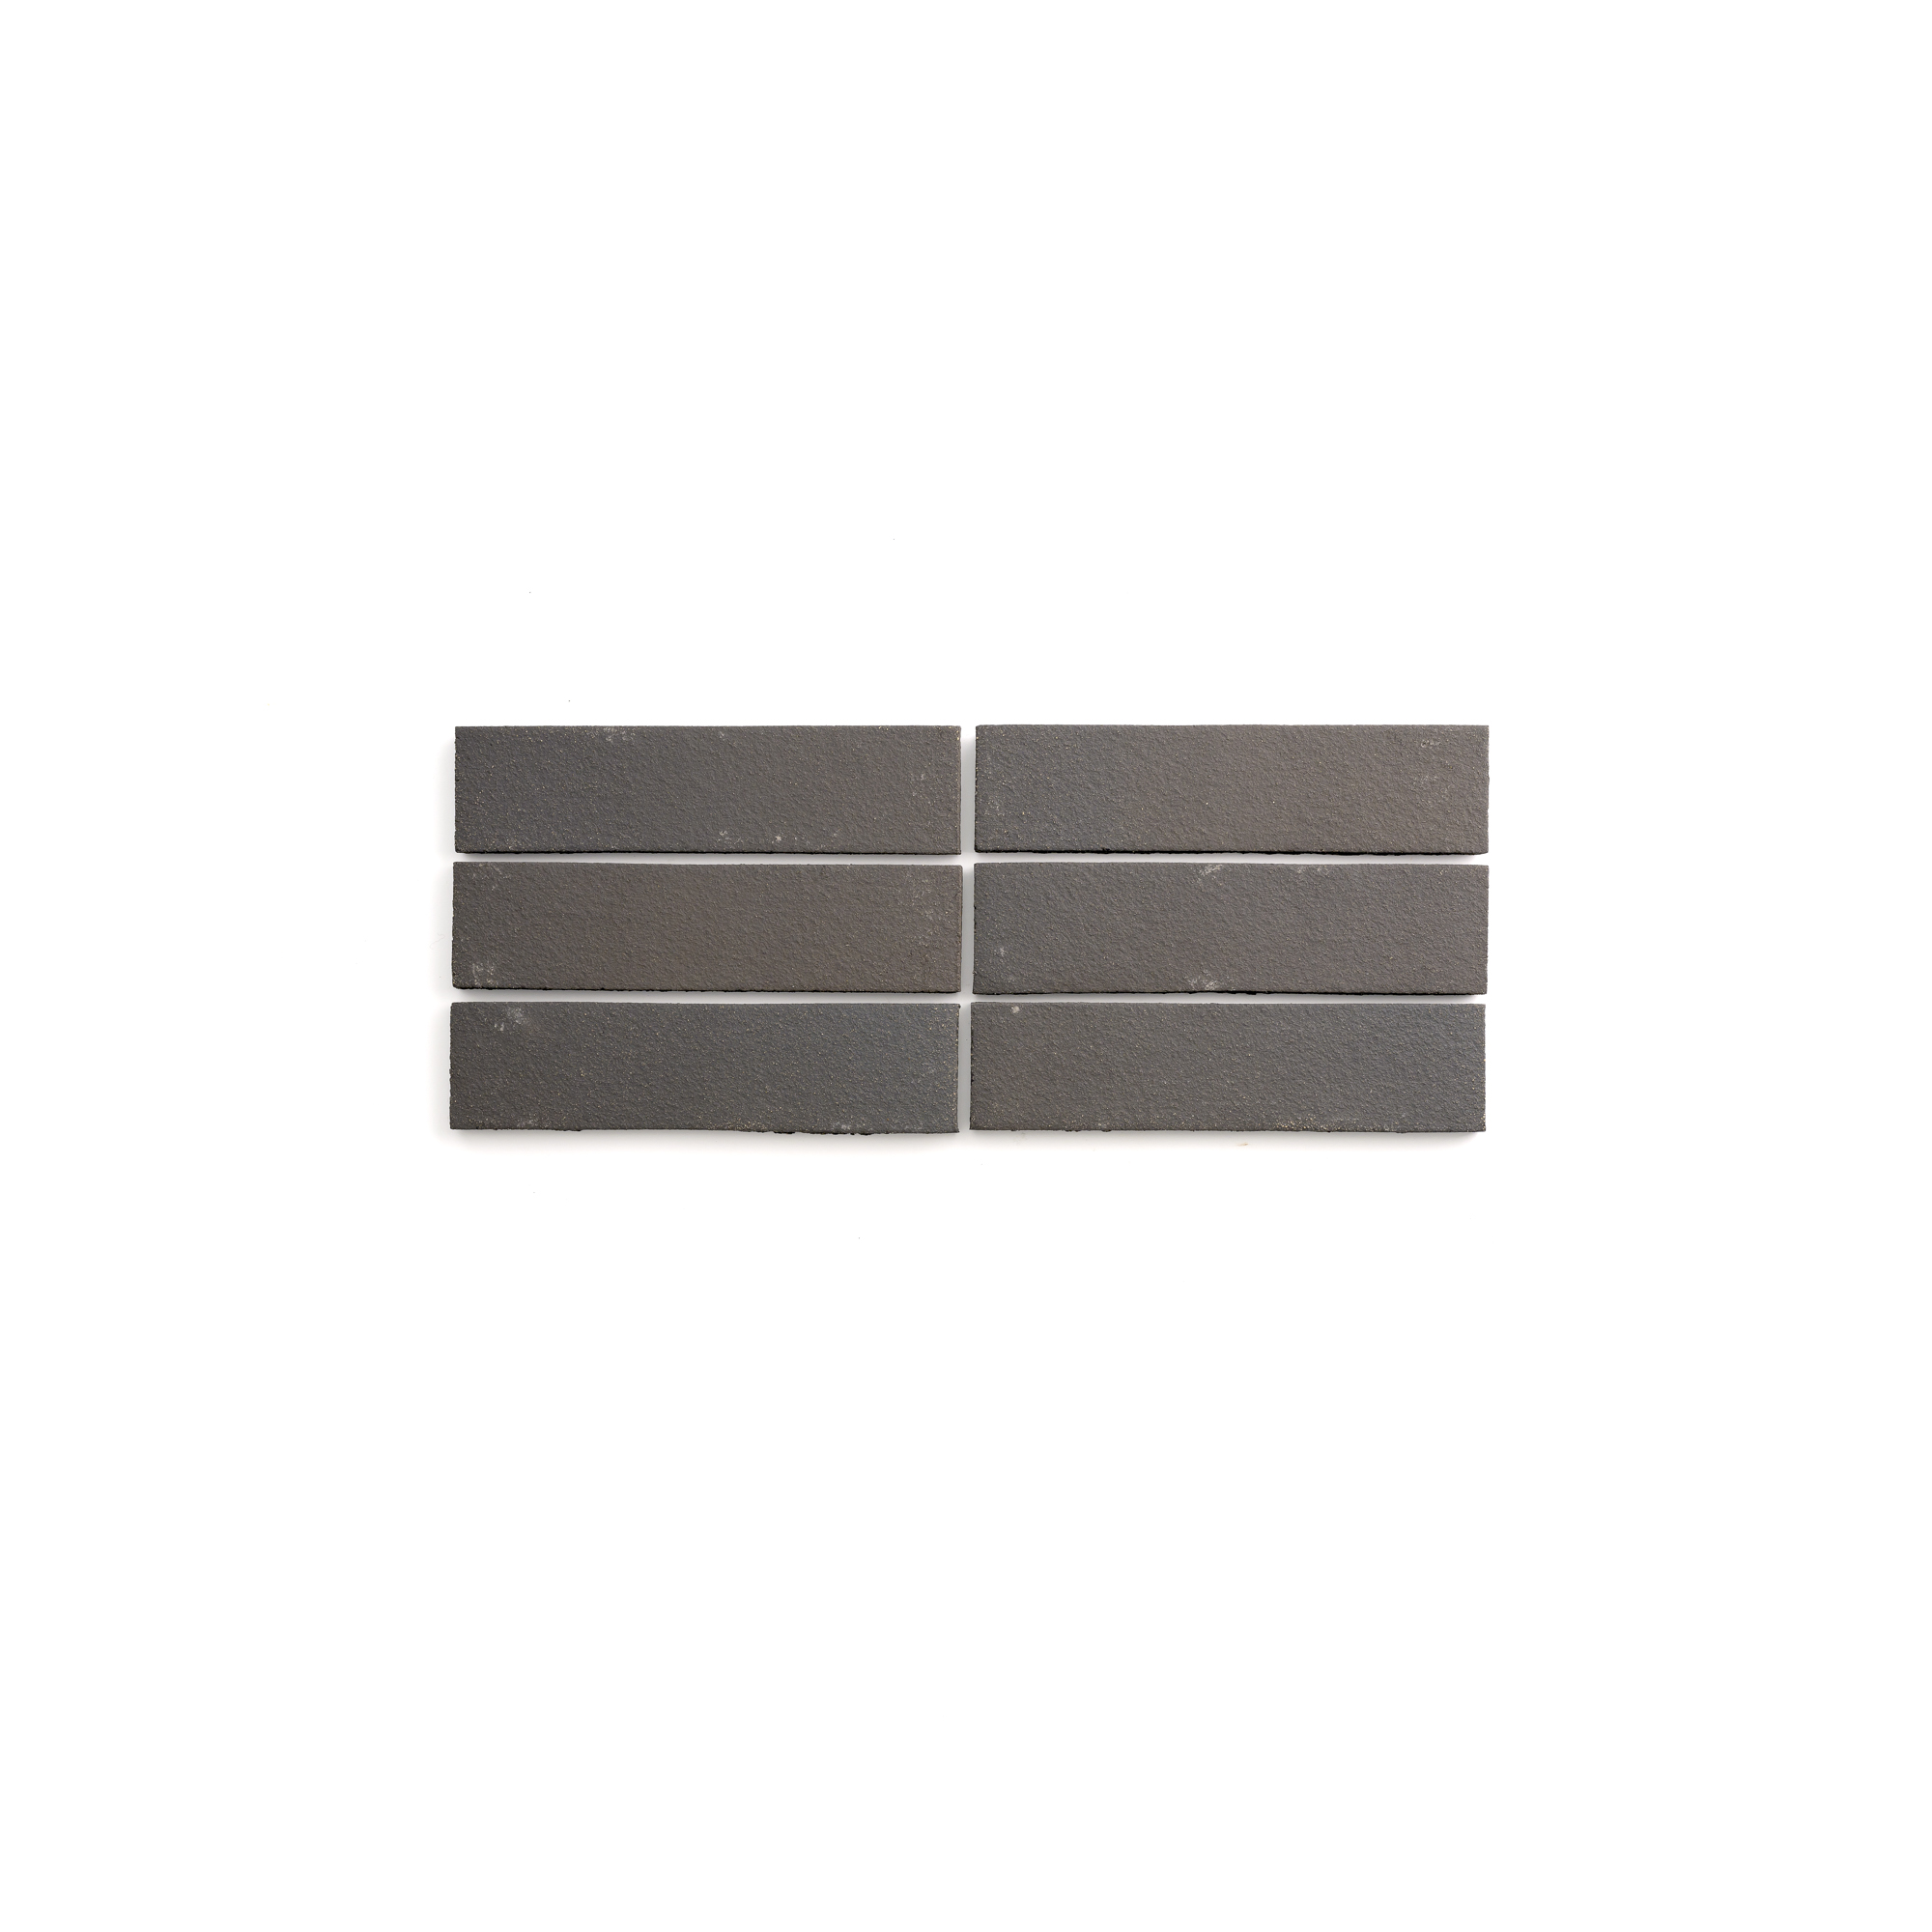 Sample: Black Terracotta Tile - 2x8 (1 sample=2 tiles)